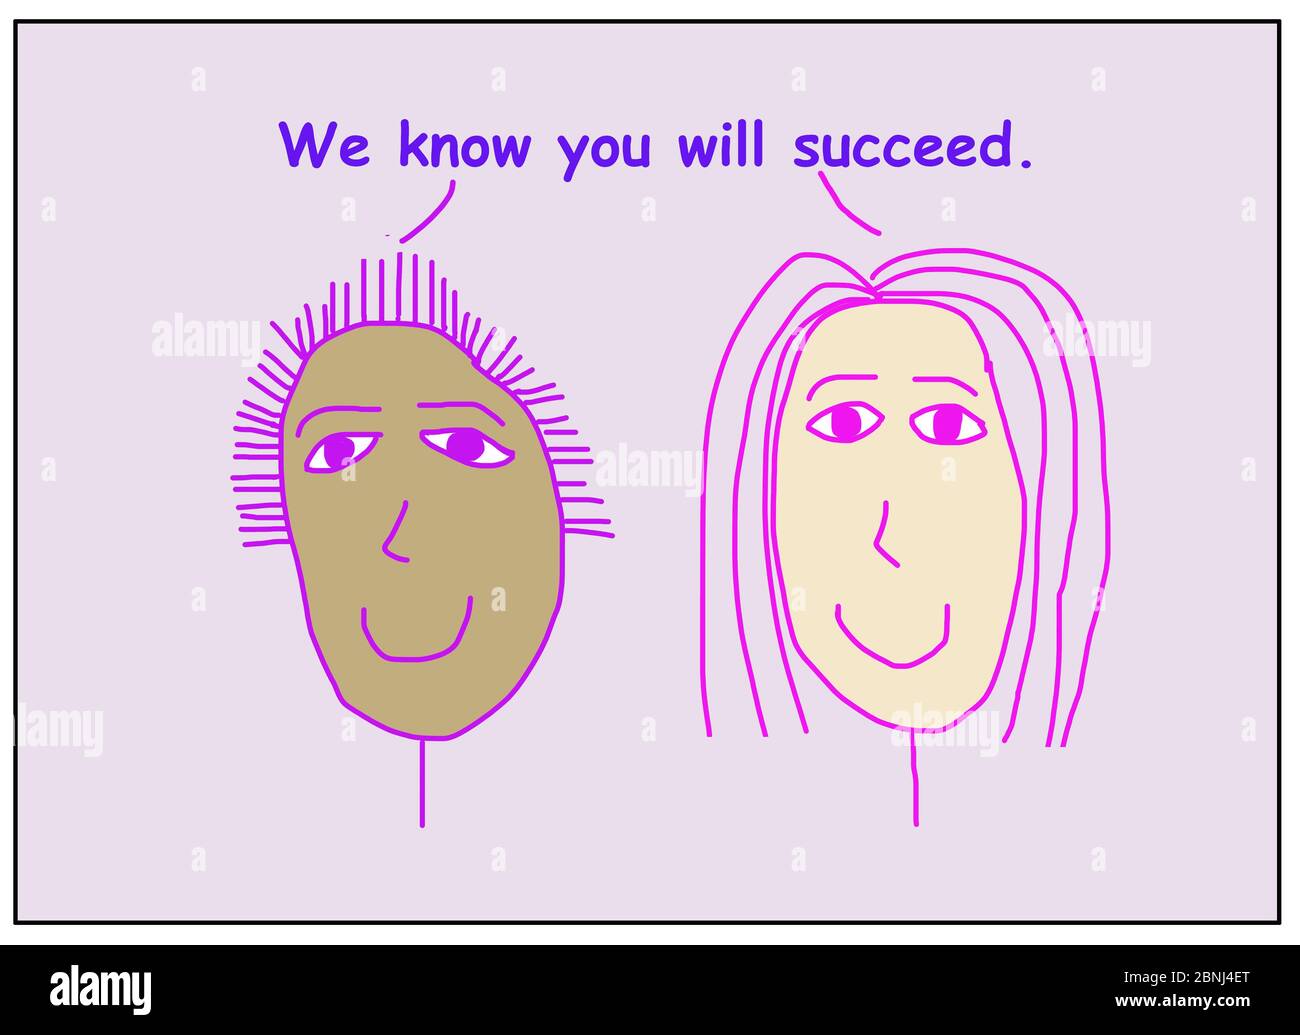 Farbe Cartoon von zwei lächelnden und ethnisch vielfältigen Frauen besagt, dass wir wissen, dass Sie erfolgreich sein werden. Stockfoto